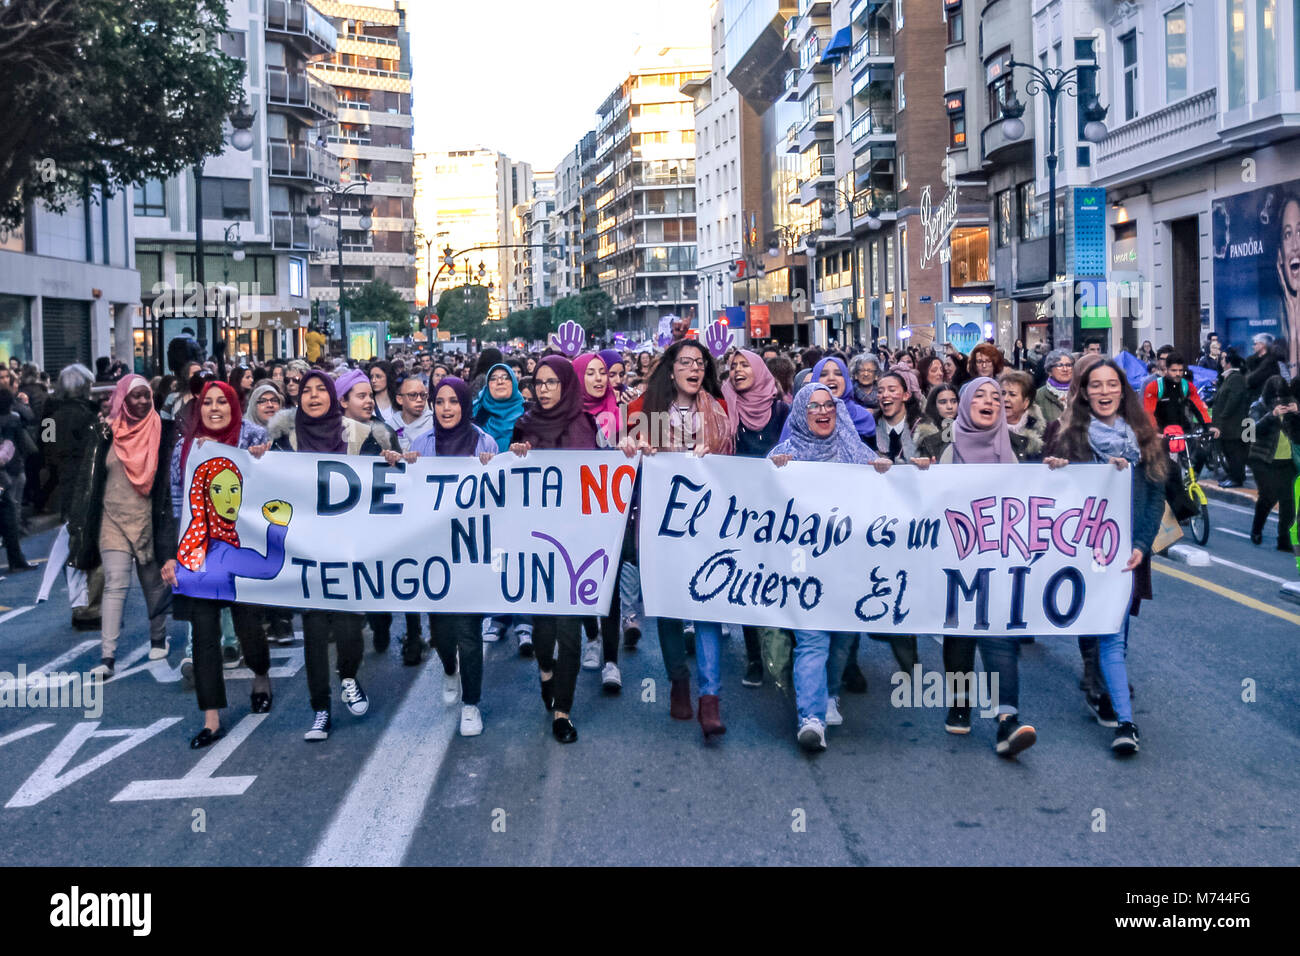 Valencai, Spanien. 8. März feministische Streik in Spanien Anspruch auf gleiche Bezahlung und gleiche Rechte für Frauen und Männer - Pro Feminismus Bewegung in Spanien für einen Generalstreik aufgerufen, keine Arbeit, kein Shop, keine Familie, für alle Arbeitnehmerinnen. "Wenn wir aufhören, die Welt nicht mehr" ist das Motto, Hommage an Island Frauen Streik 1975 erreicht 9 von 10 Frauen im Land zu stoppen. - Frauen an der Demonstration in Valencia mit Hijab als Zeichen für die Aufnahme von muslimischen Frauen Credit: Santiago vidal Vallejo/Alamy leben Nachrichten Stockfoto